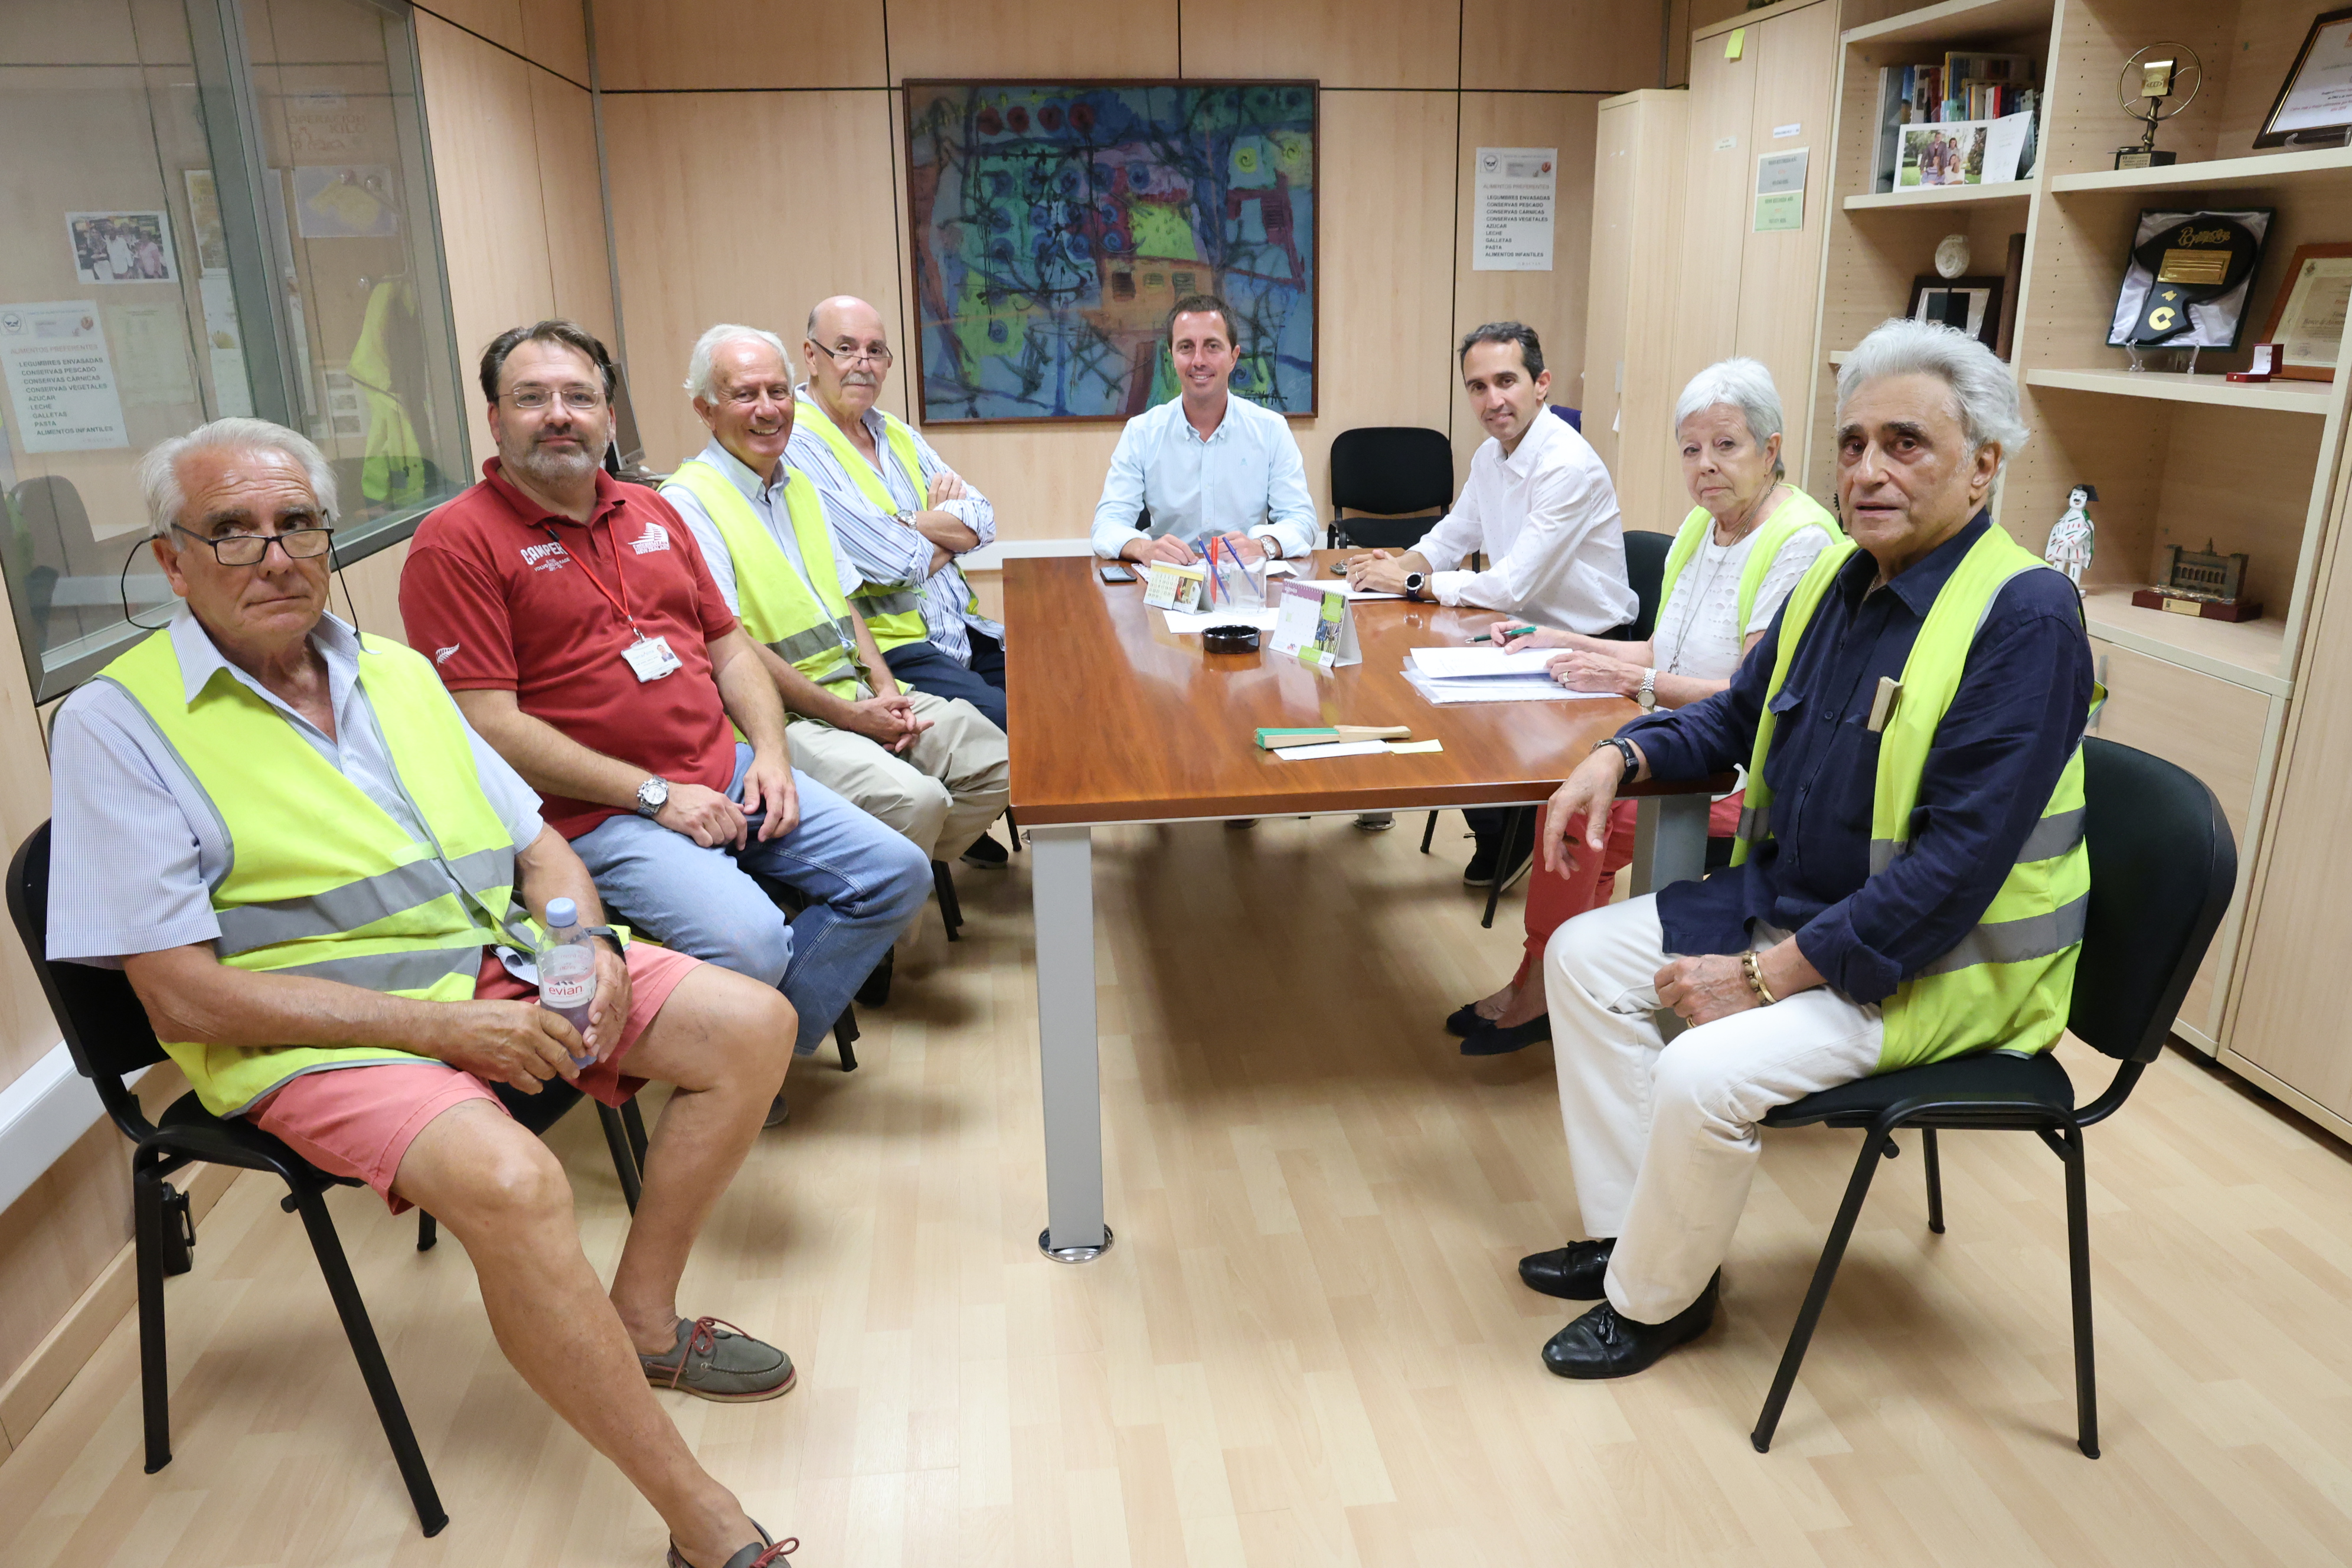 El president del Consell de Mallorca, Llorenç Galmés, visita el Banc d'Aliments acompanyat del conseller de Benestar Social, Guillermo Sánchez. 